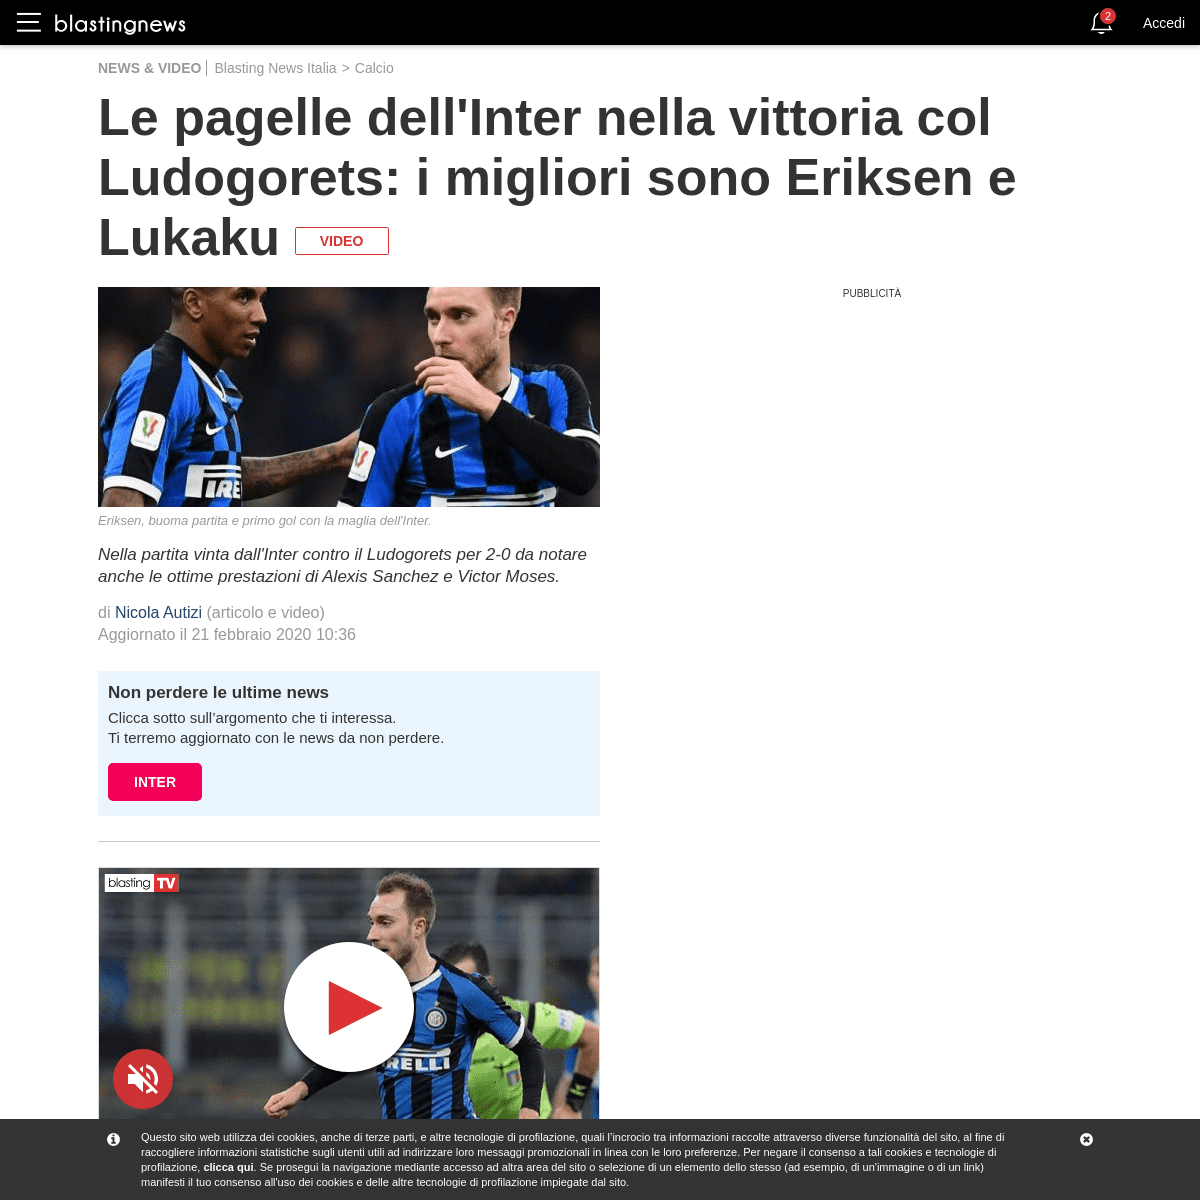 Le pagelle dell'Inter nella vittoria col Ludogorets- i migliori sono Eriksen e Lukaku